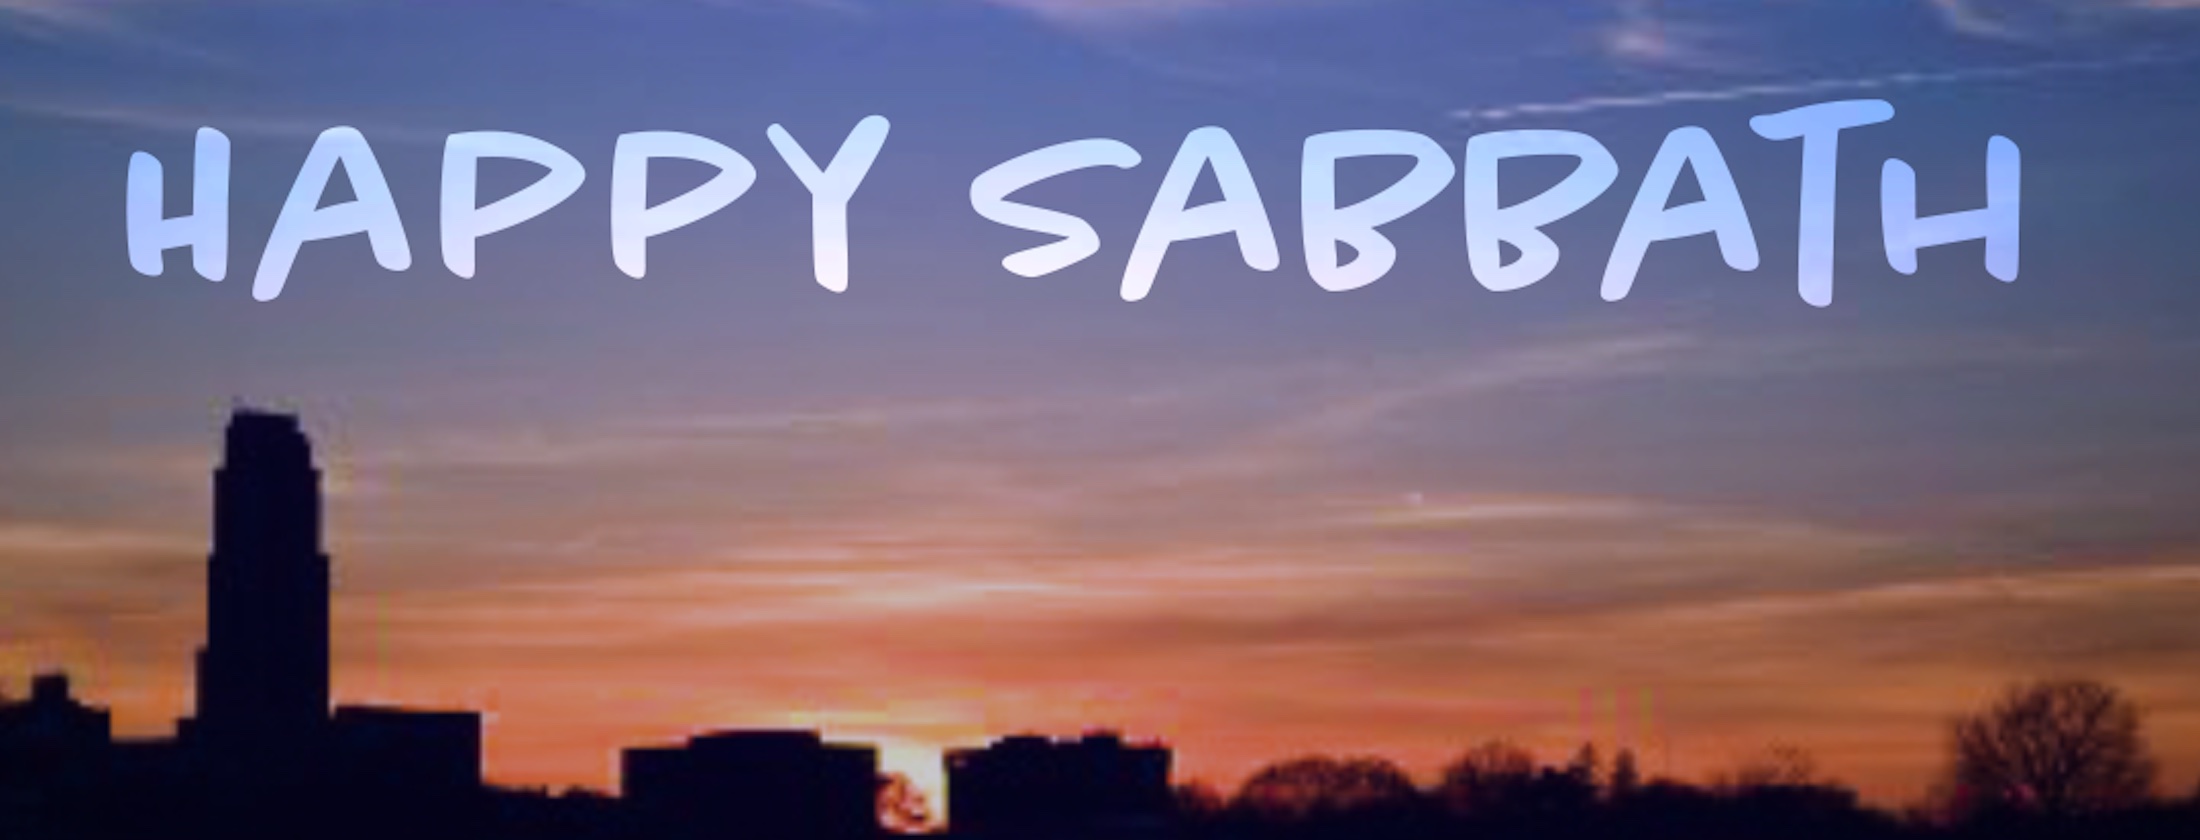 Happy Sabbath - Film Independent